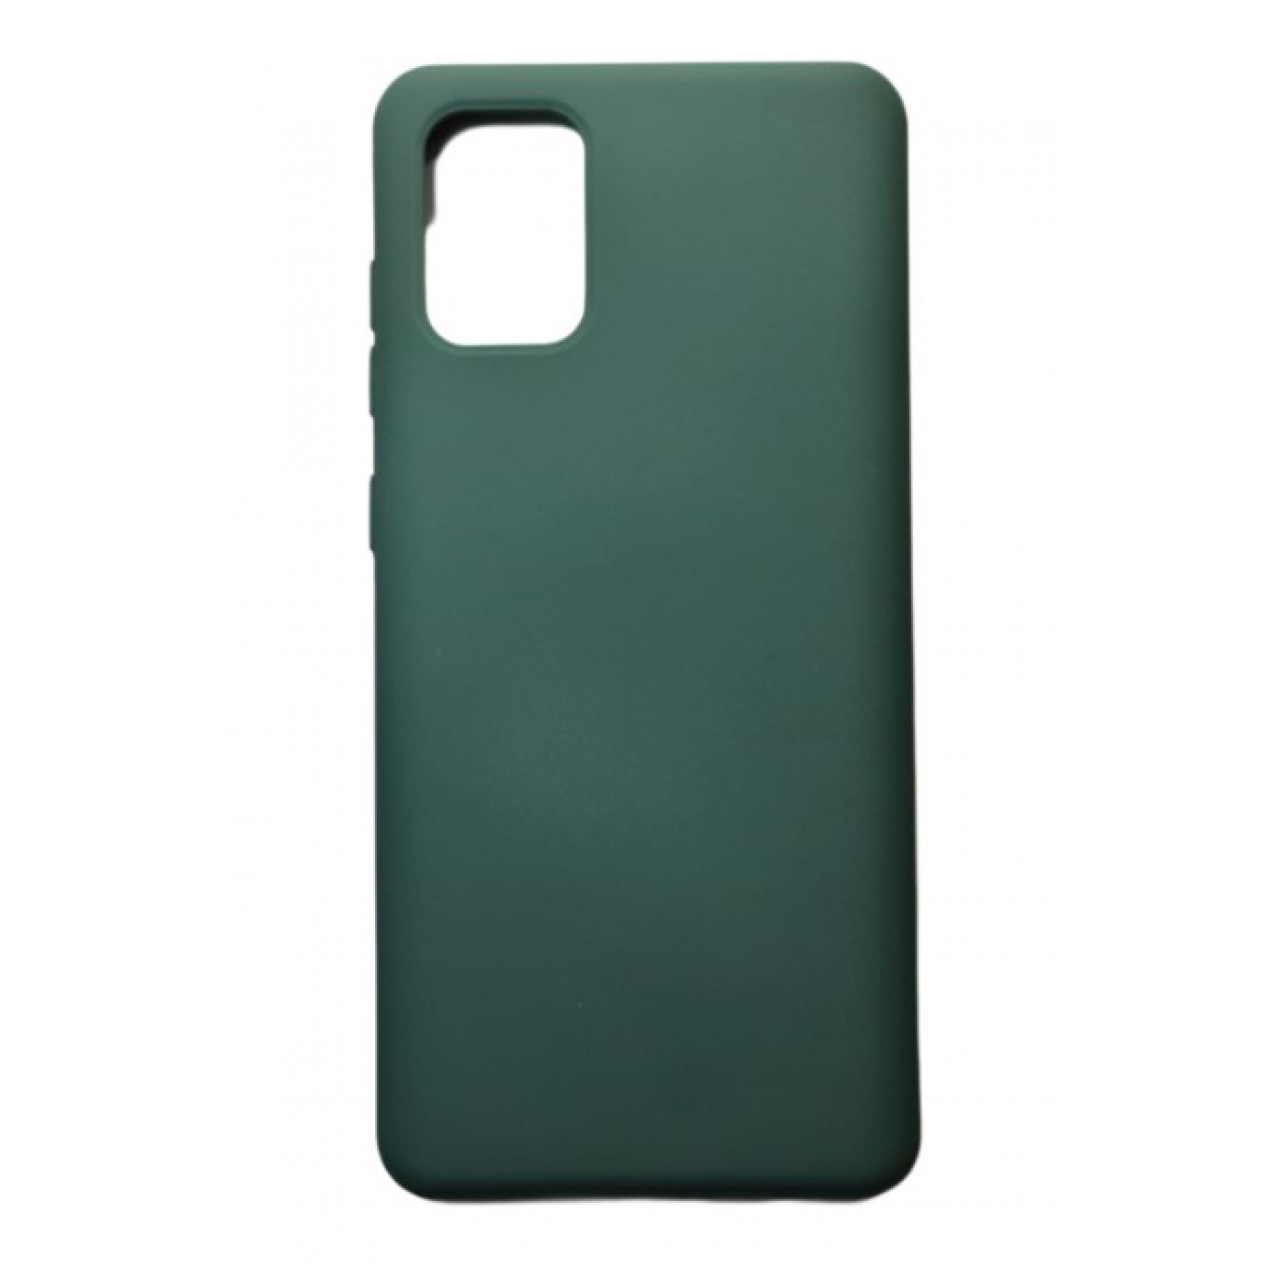 Θήκη Samsung Galaxy S20 Silicone soft-touch cover - 5091 - Πράσινο - ΟΕΜ